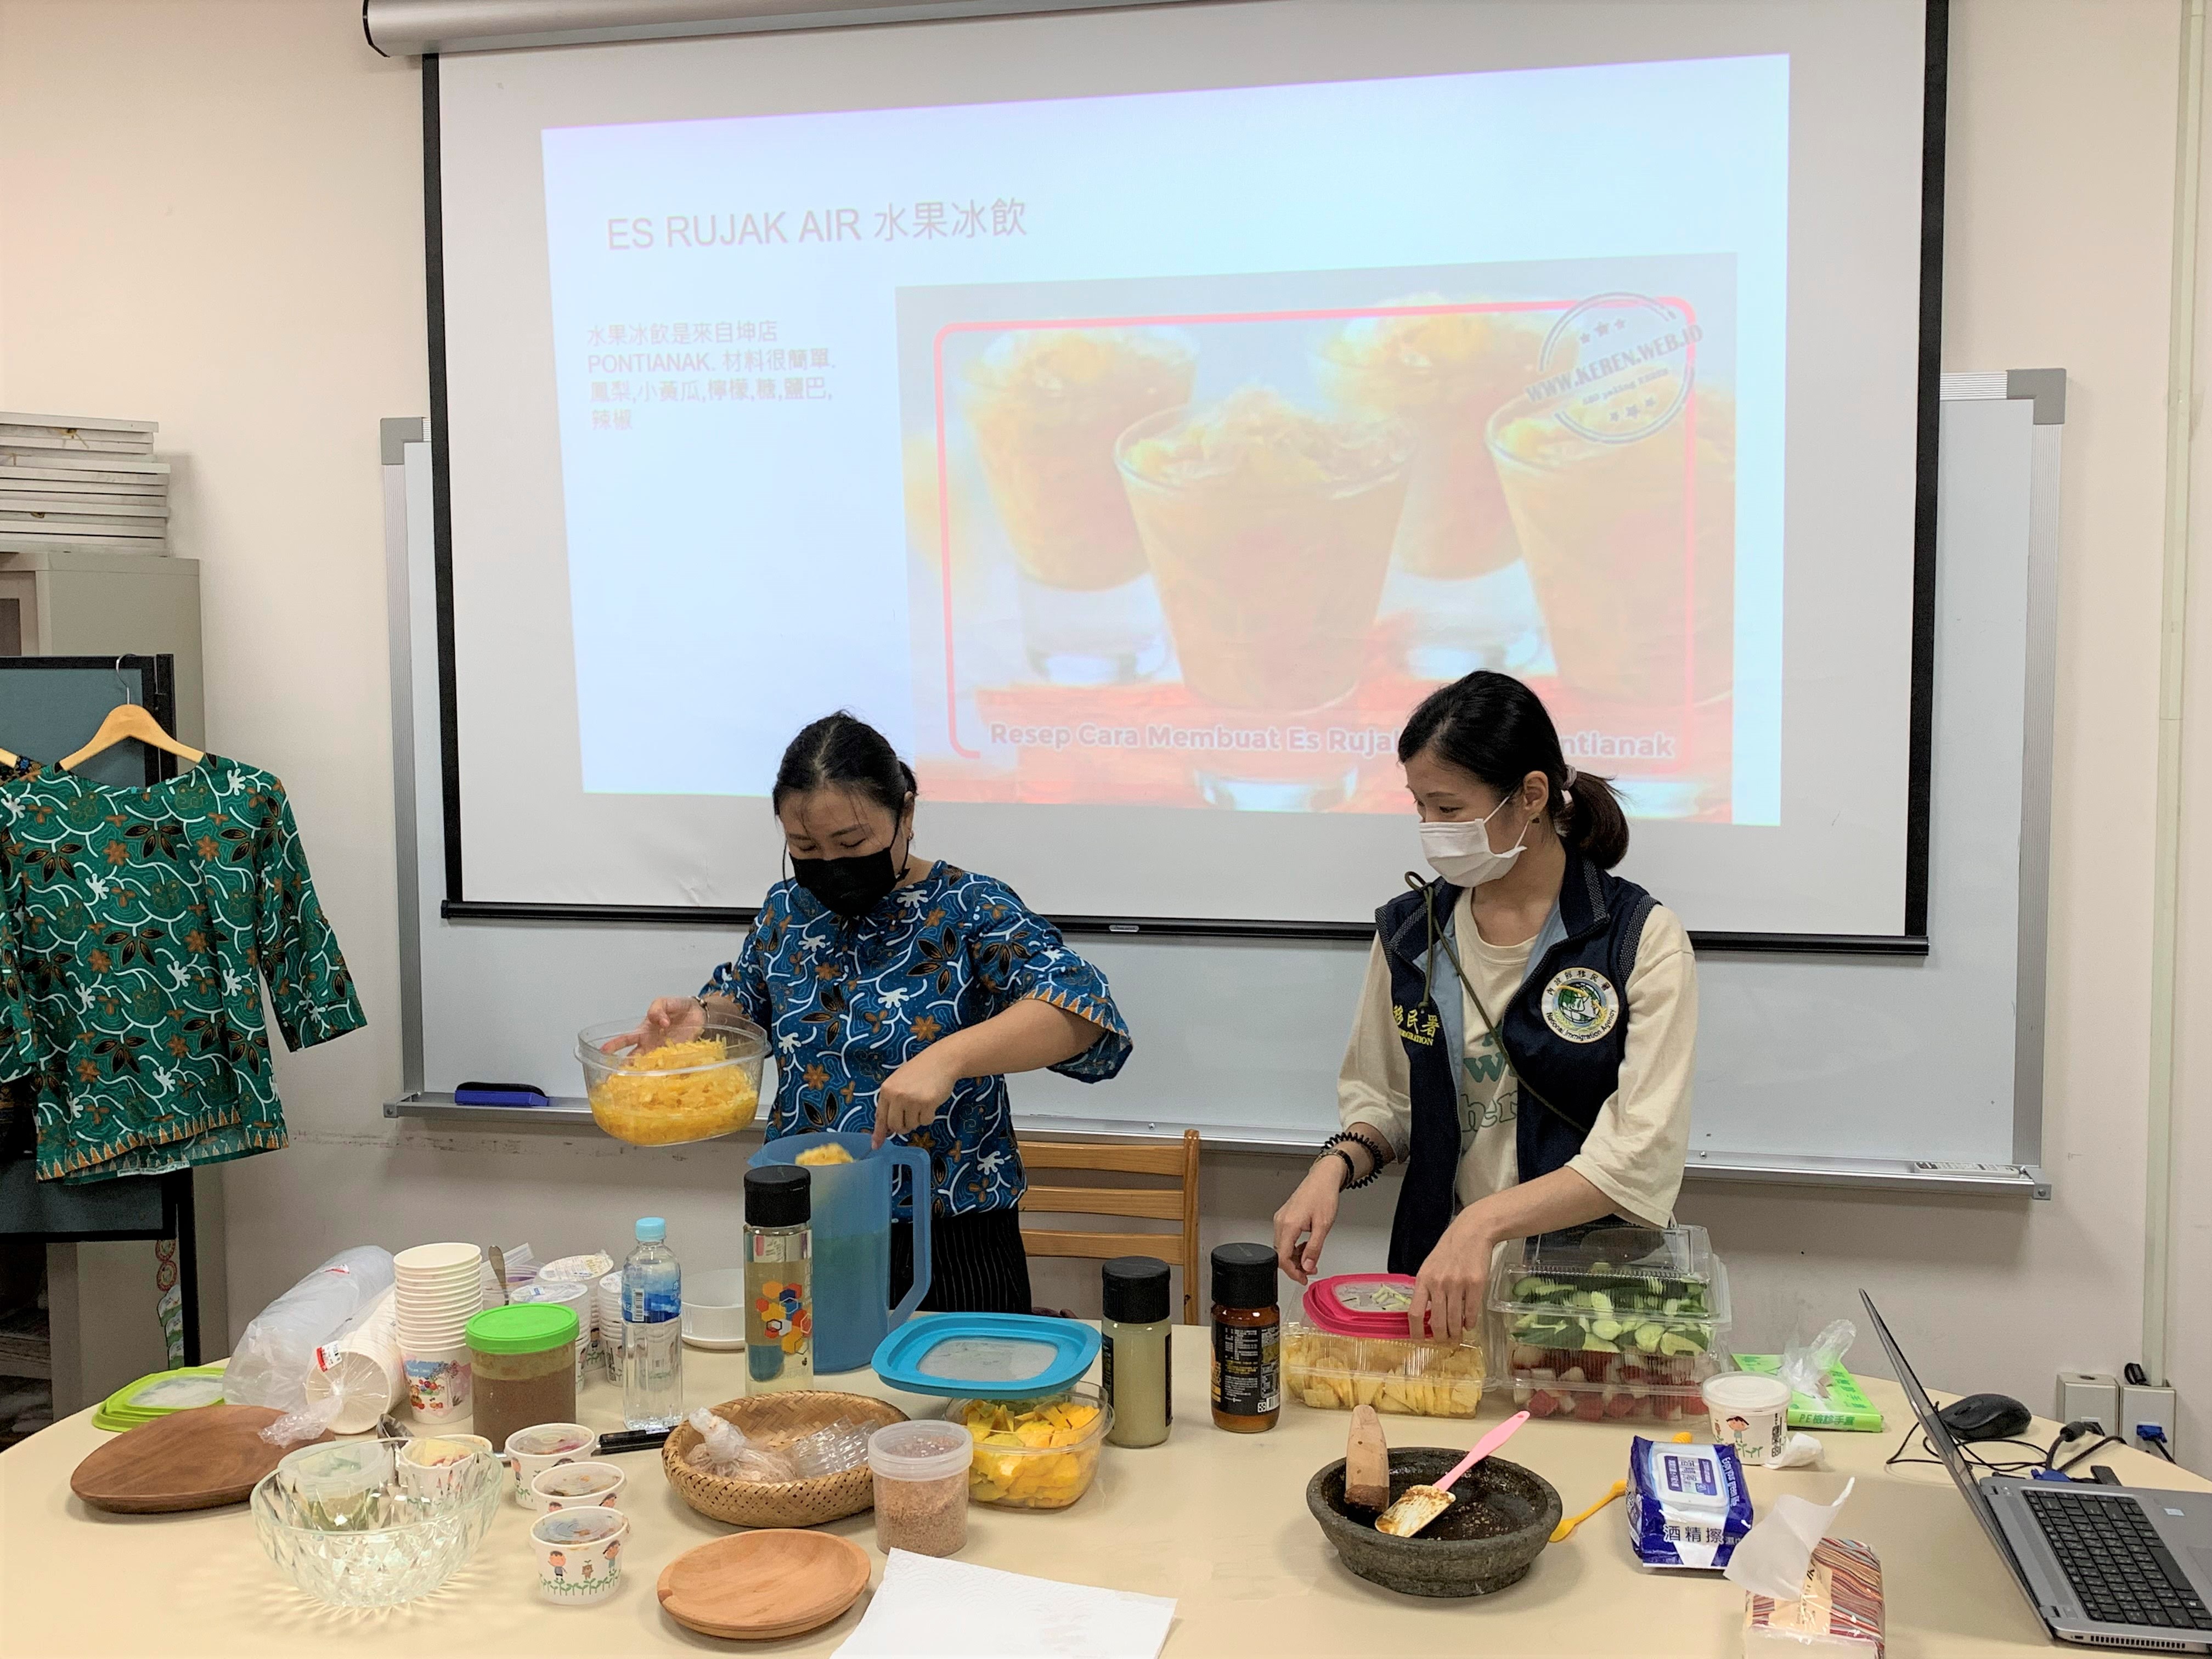 Guo Guanling (1 dari kiri) mendemonstrasikan cara membuat minuman es buah Indonesia. Sumber: Diambil dari Stasiun Layanan Imigrasi Kota Taoyuan